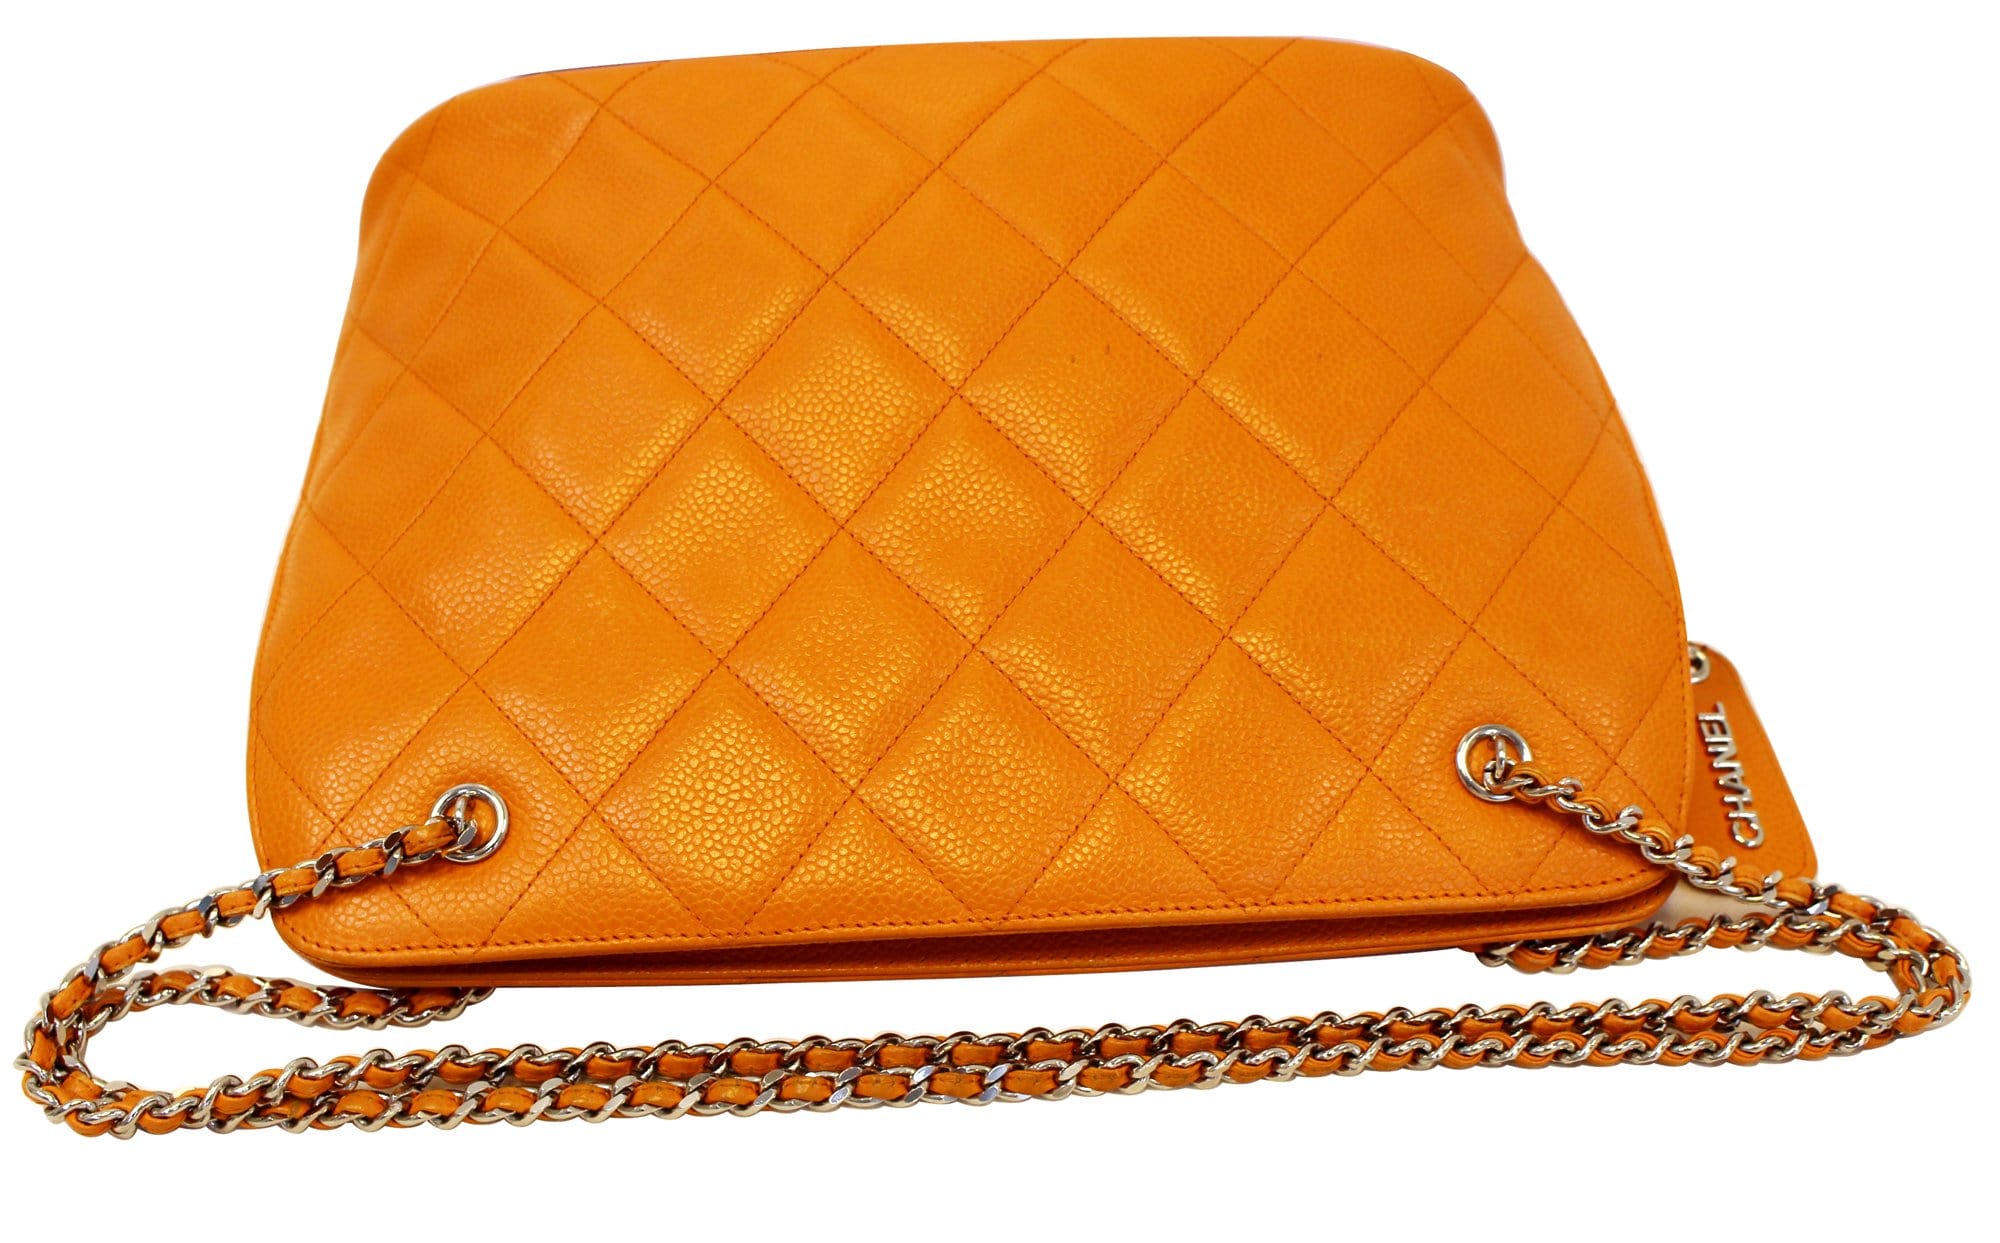 Authentic CHANEL Beige Caviar Leather CC Hand Shoulder Bag Purse #43806